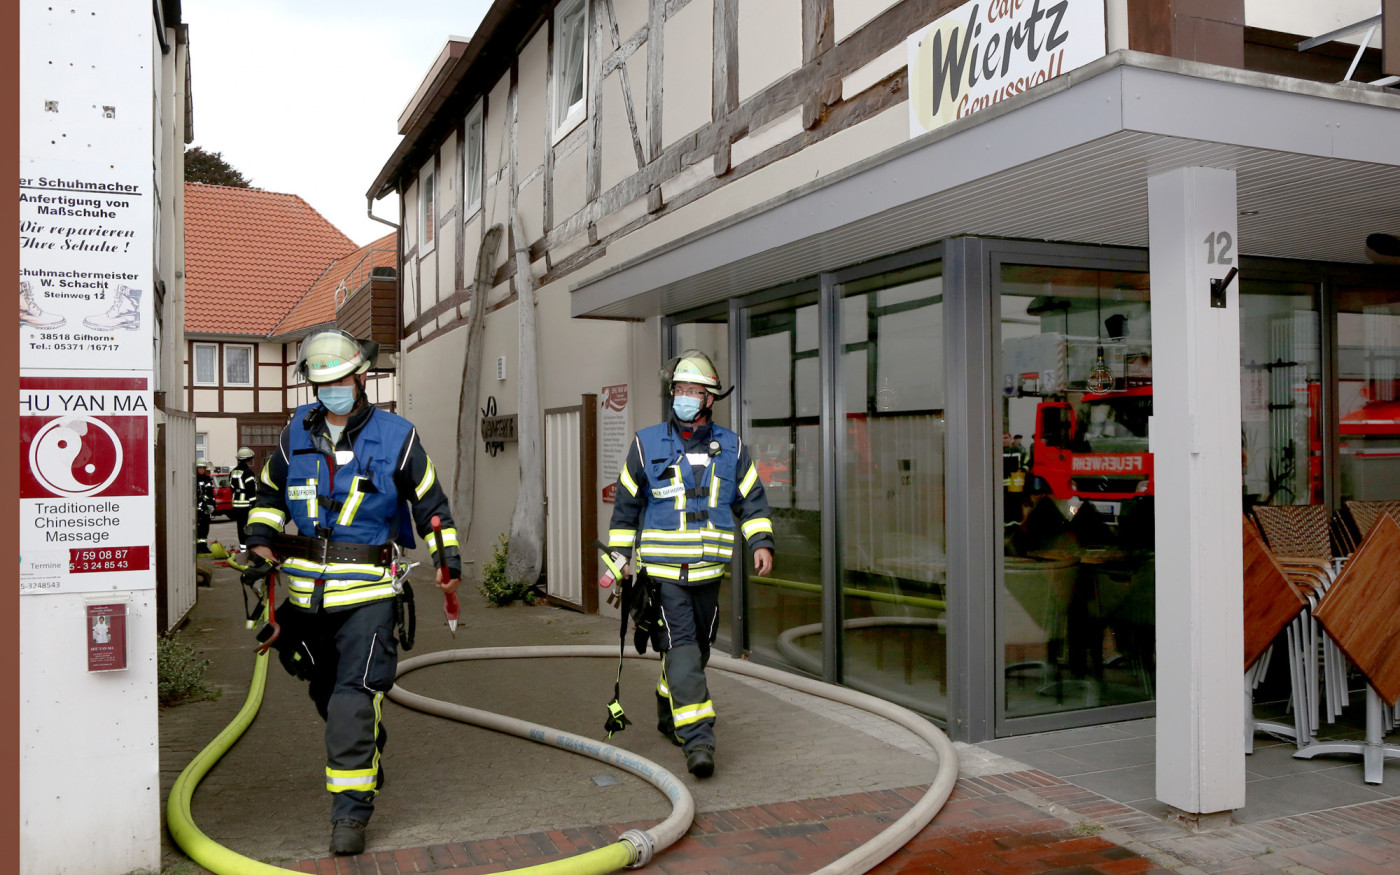 Einsatz in Gifhorns Innenstadt - Feuerwehr öffnet Wohnung, holt Topf vom Herd und bekämpft Rauchentwicklung